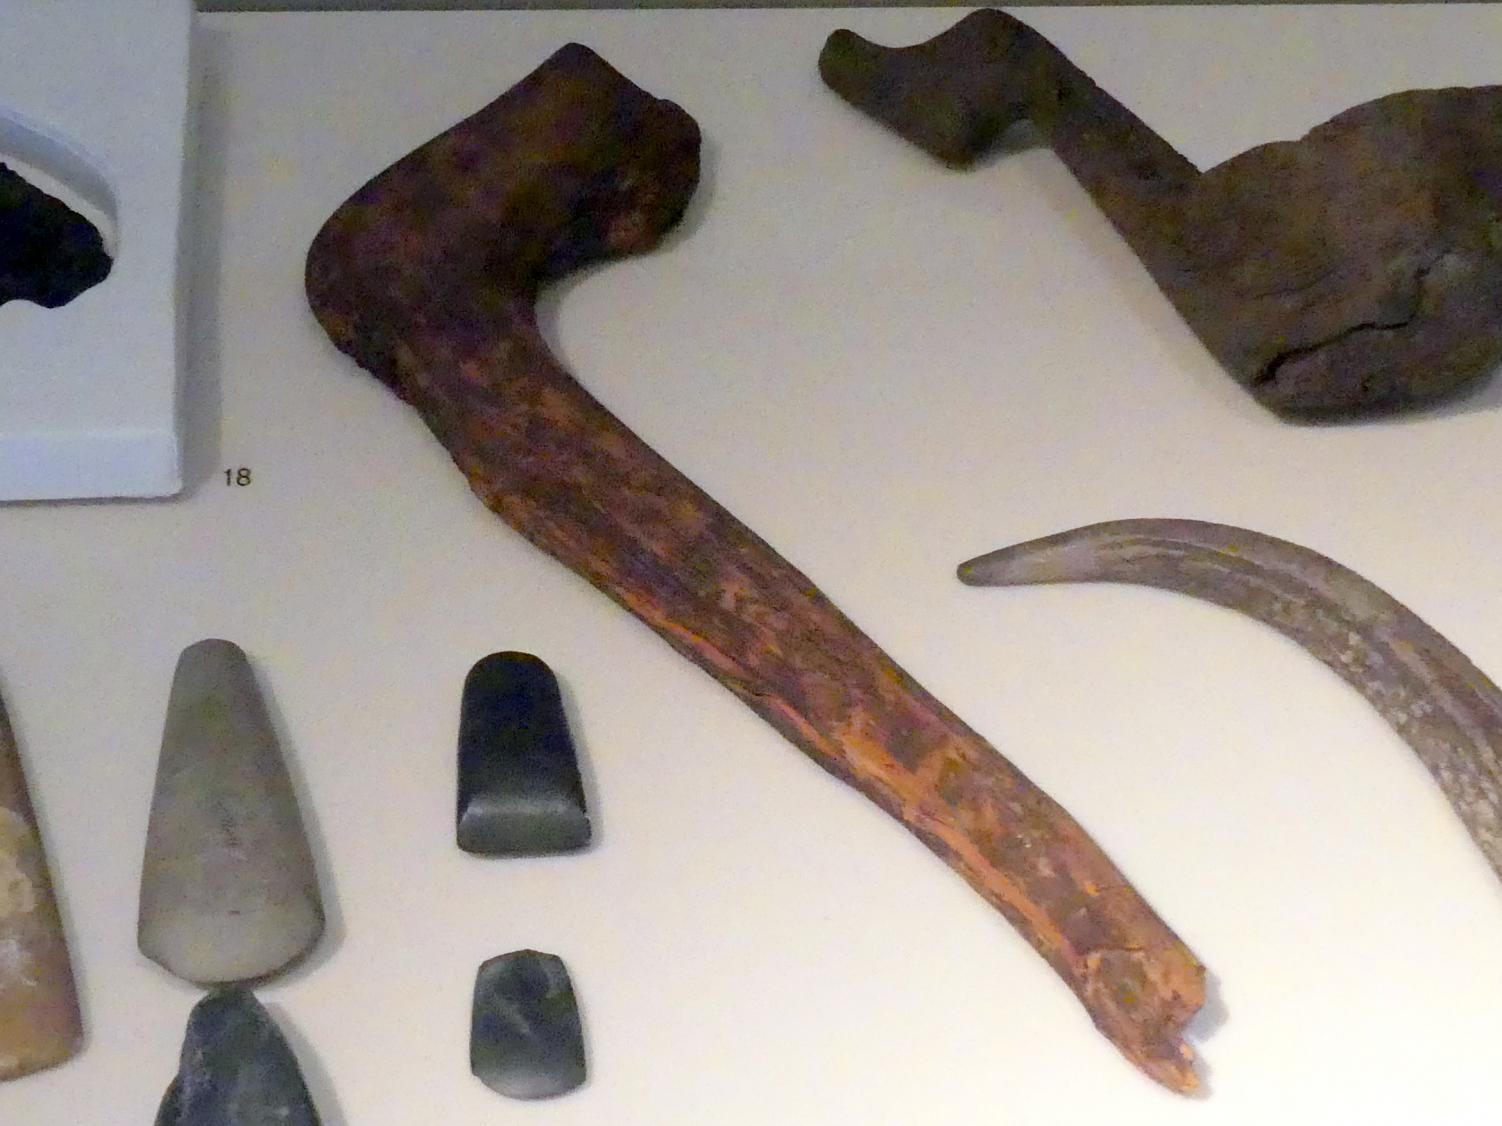 Holz- und Geweihfunde, Jungneolithikum, 4400 - 3500 v. Chr., Spätneolithikum, Undatiert, 4400 - 2800 v. Chr.